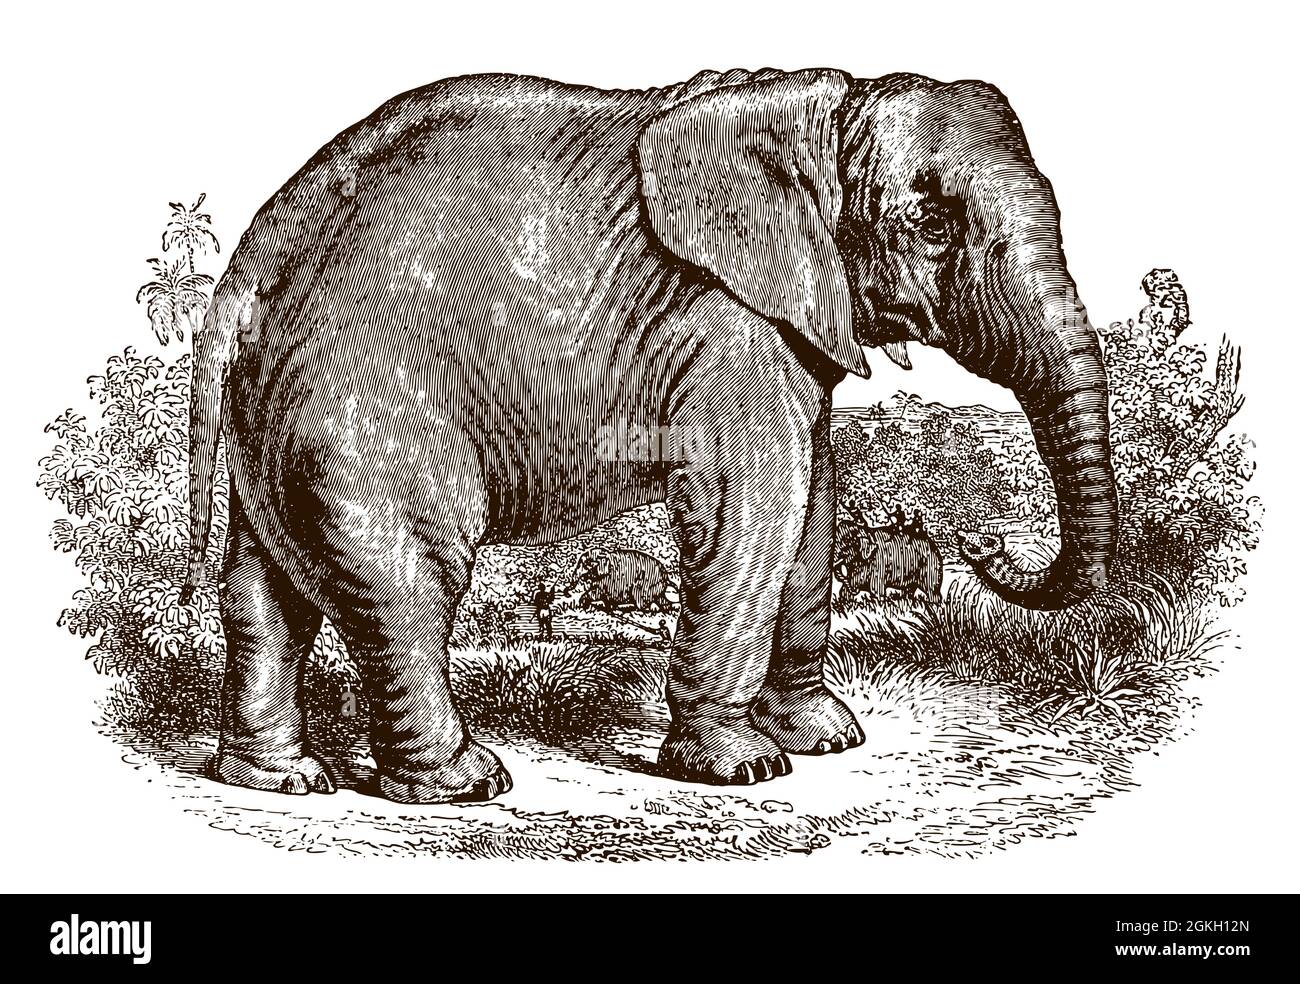 Bedrohter afrikanischer Elefant in Seitenansicht, stehend in einer grasbewachsenen Landschaft mit Bäumen. Illustration nach antikem Stich aus dem 19. Jahrhundert Stock Vektor